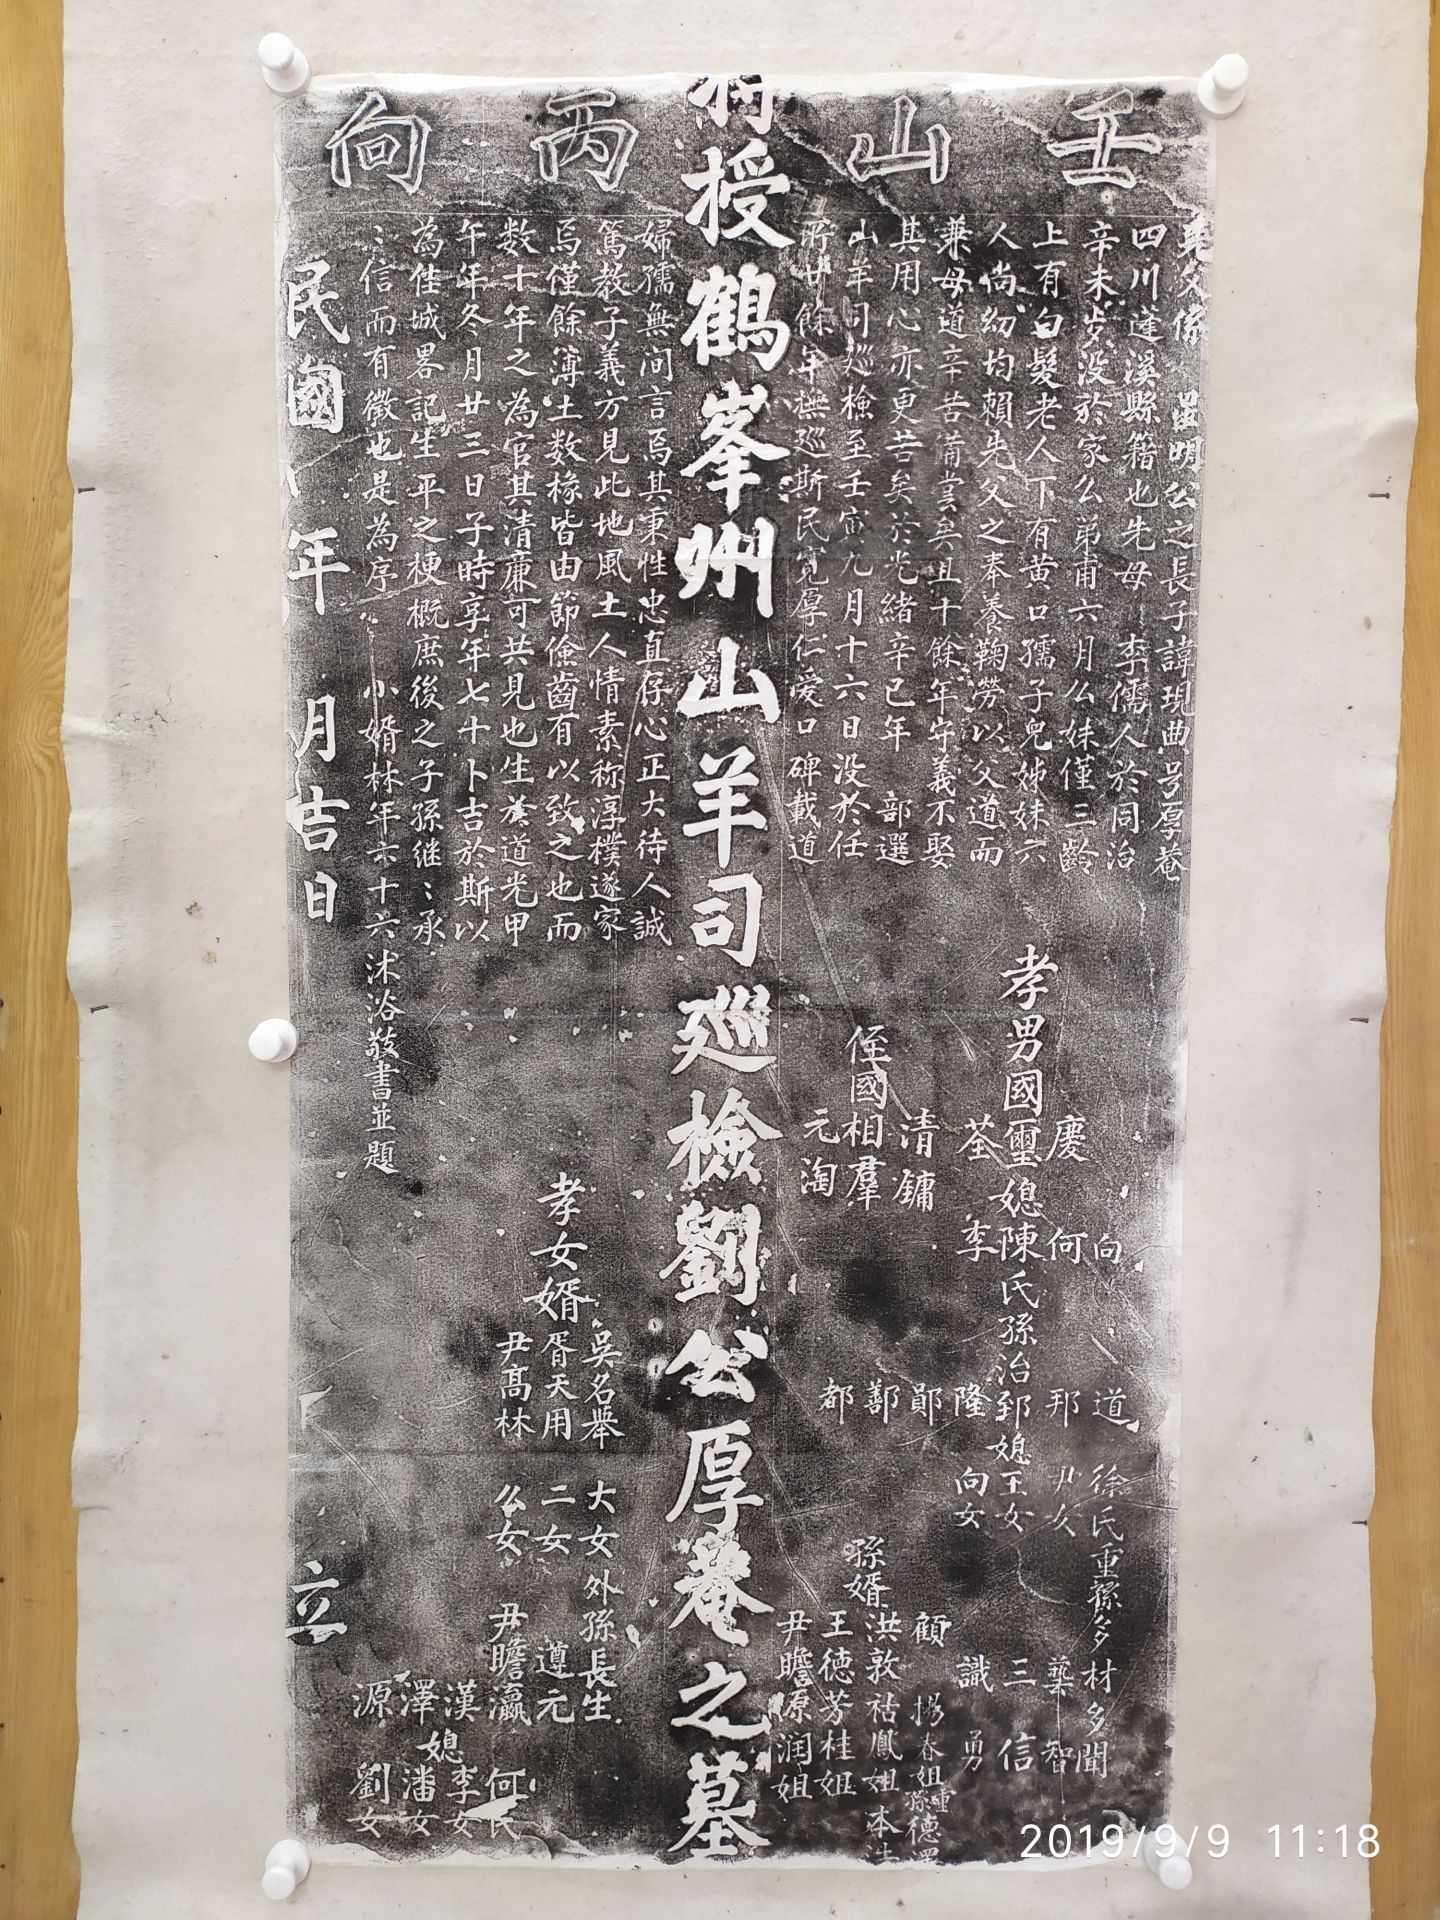 鹤峰博物馆提供的刘厚庵碑拓片